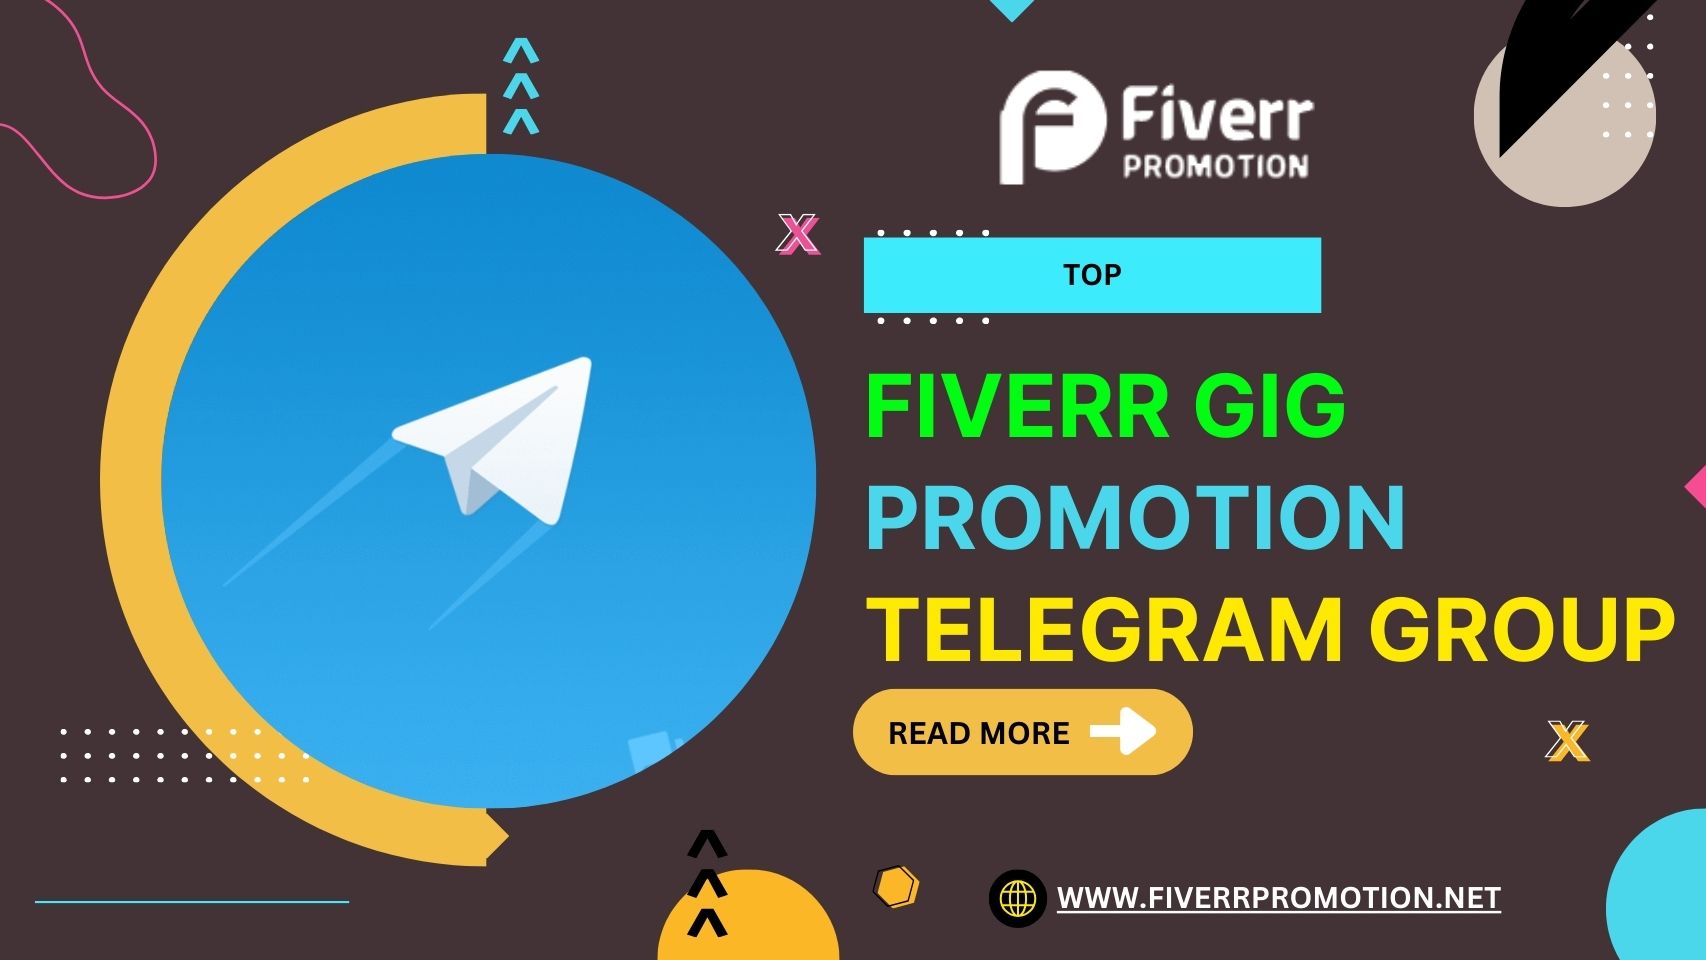 Top Fiverr Gig Promotion Telegram Group